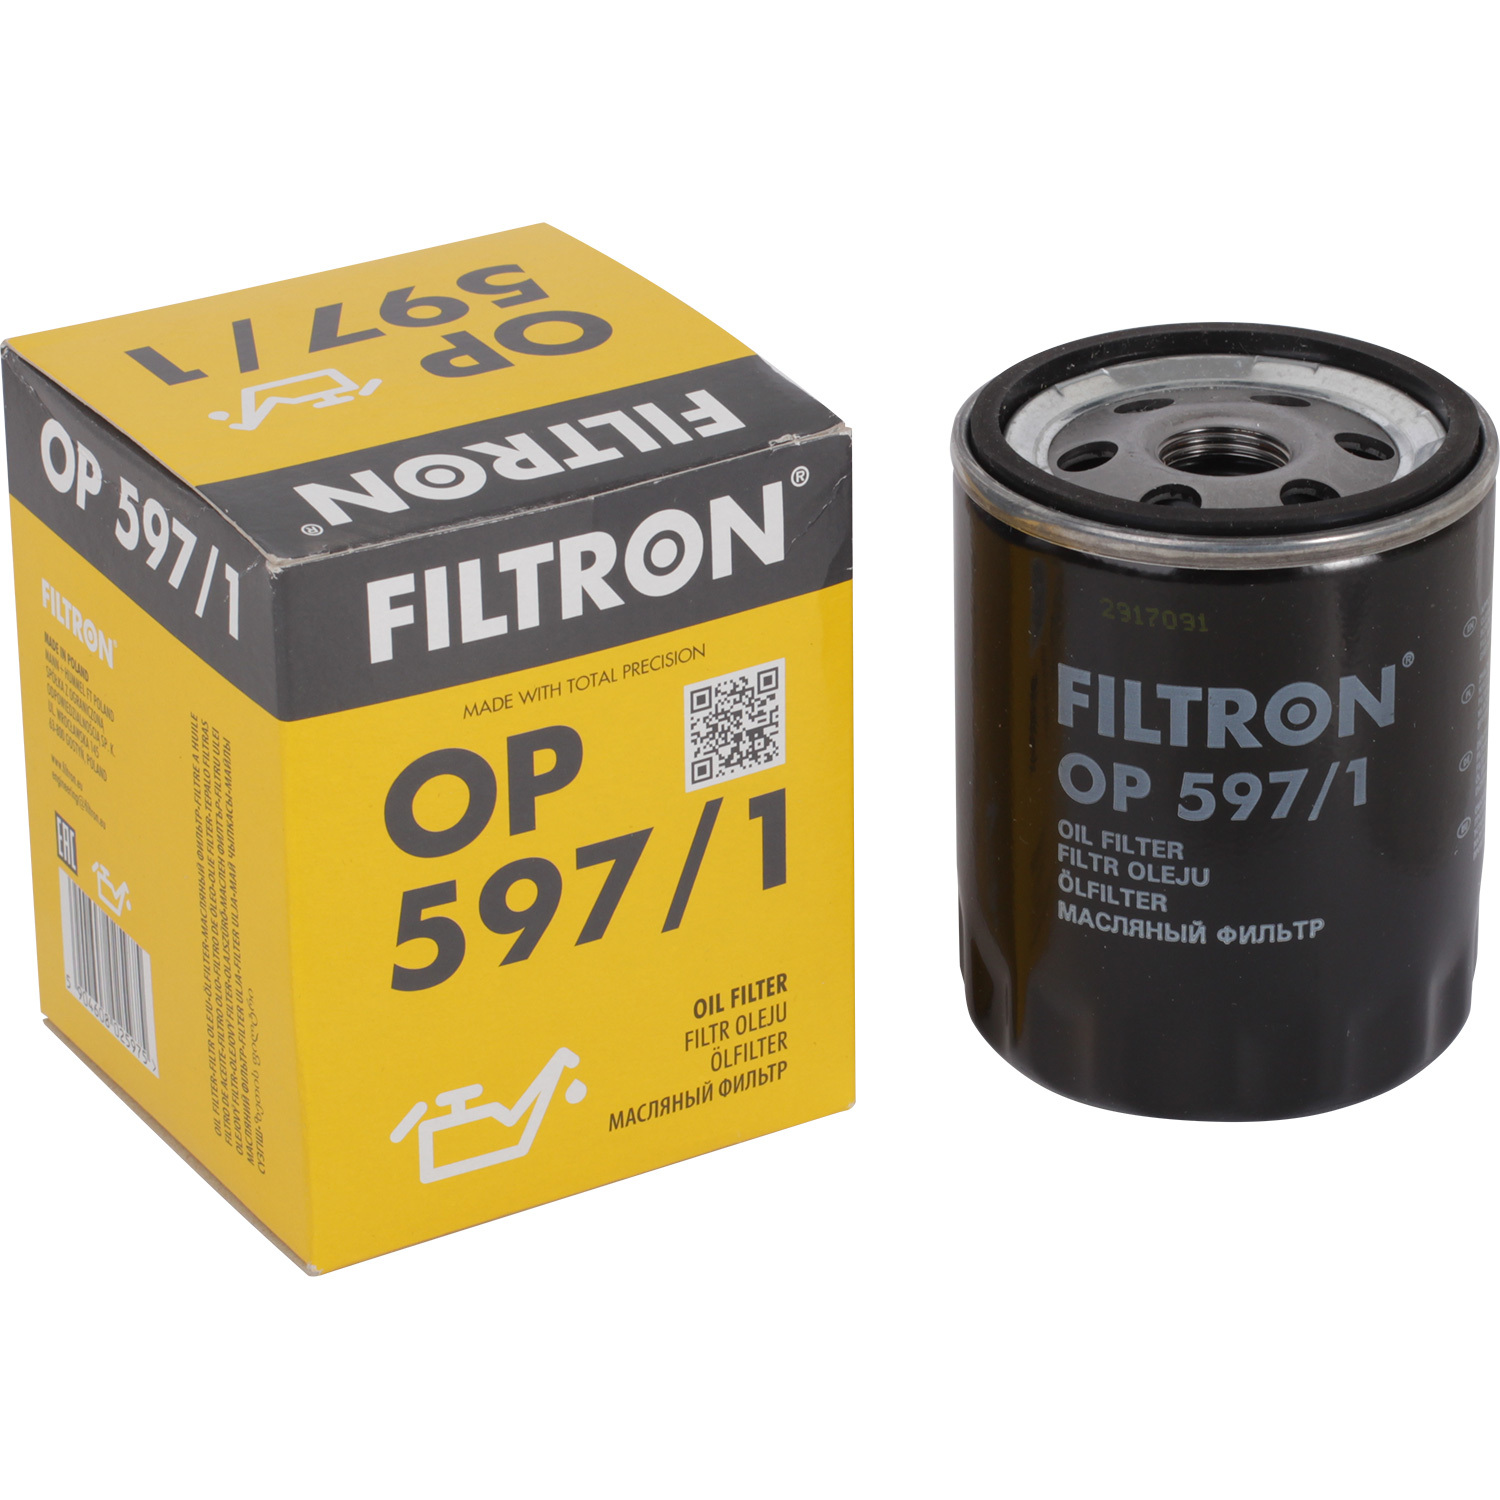 Фильтры Filtron Фильтр масляный Filtron OP5971 масляный фильтр filtron op 540 1